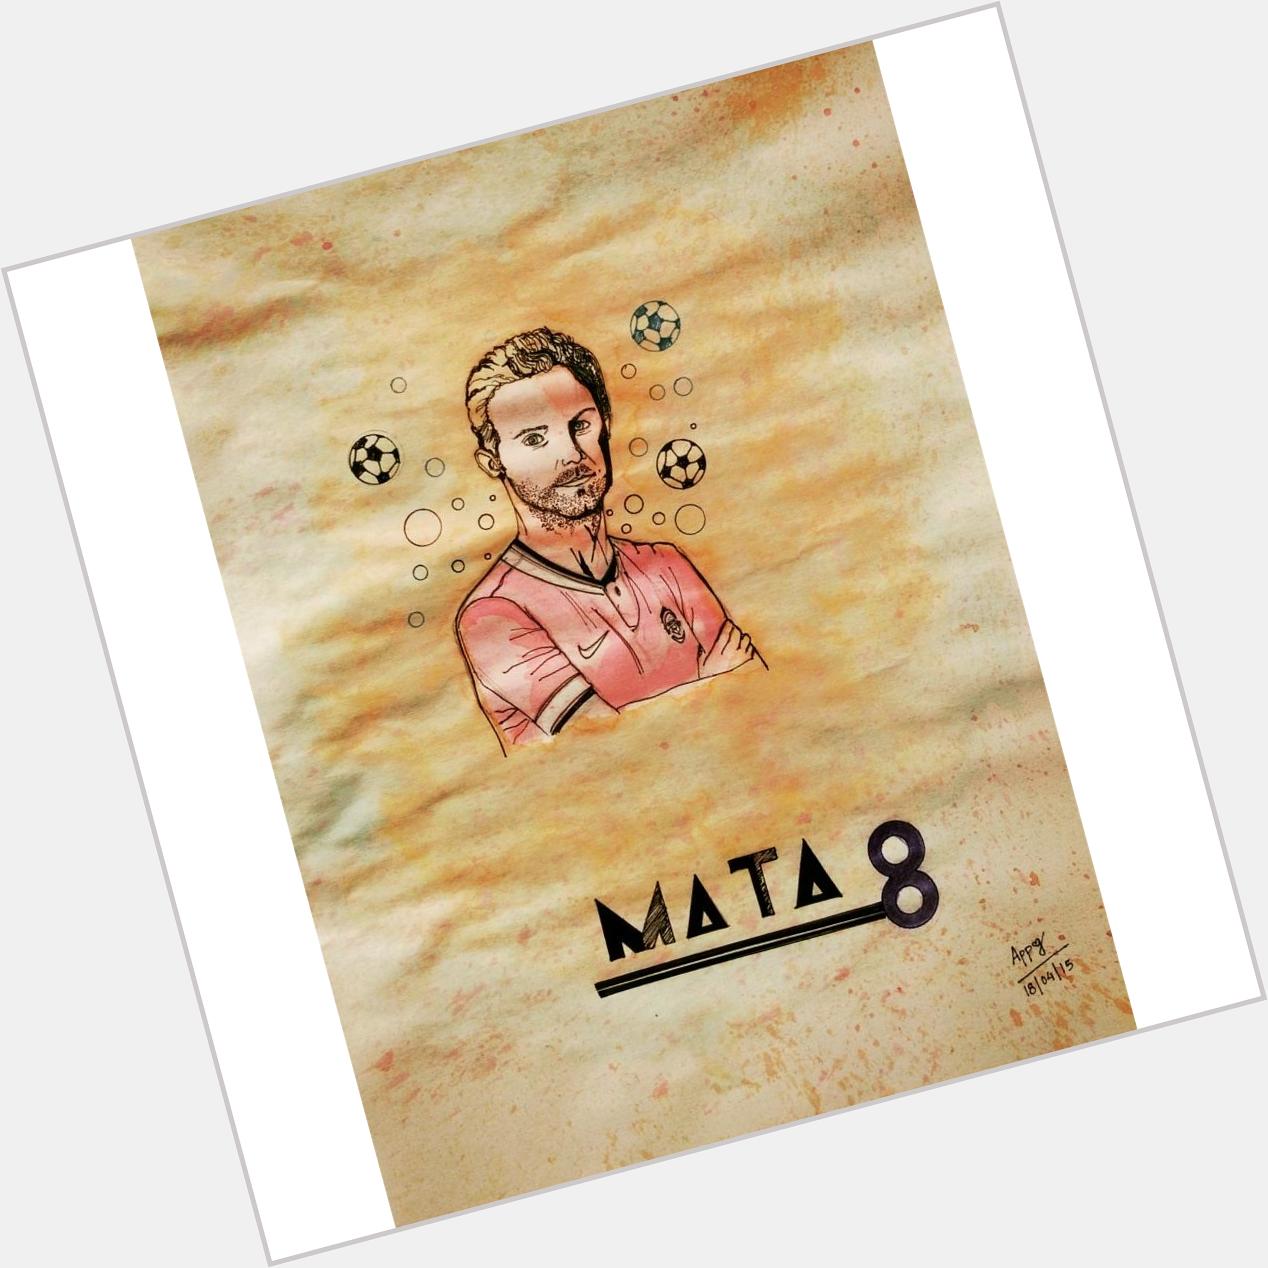   Happy Birthday Juan Mata! A lil for ya & lots of love xxxx 